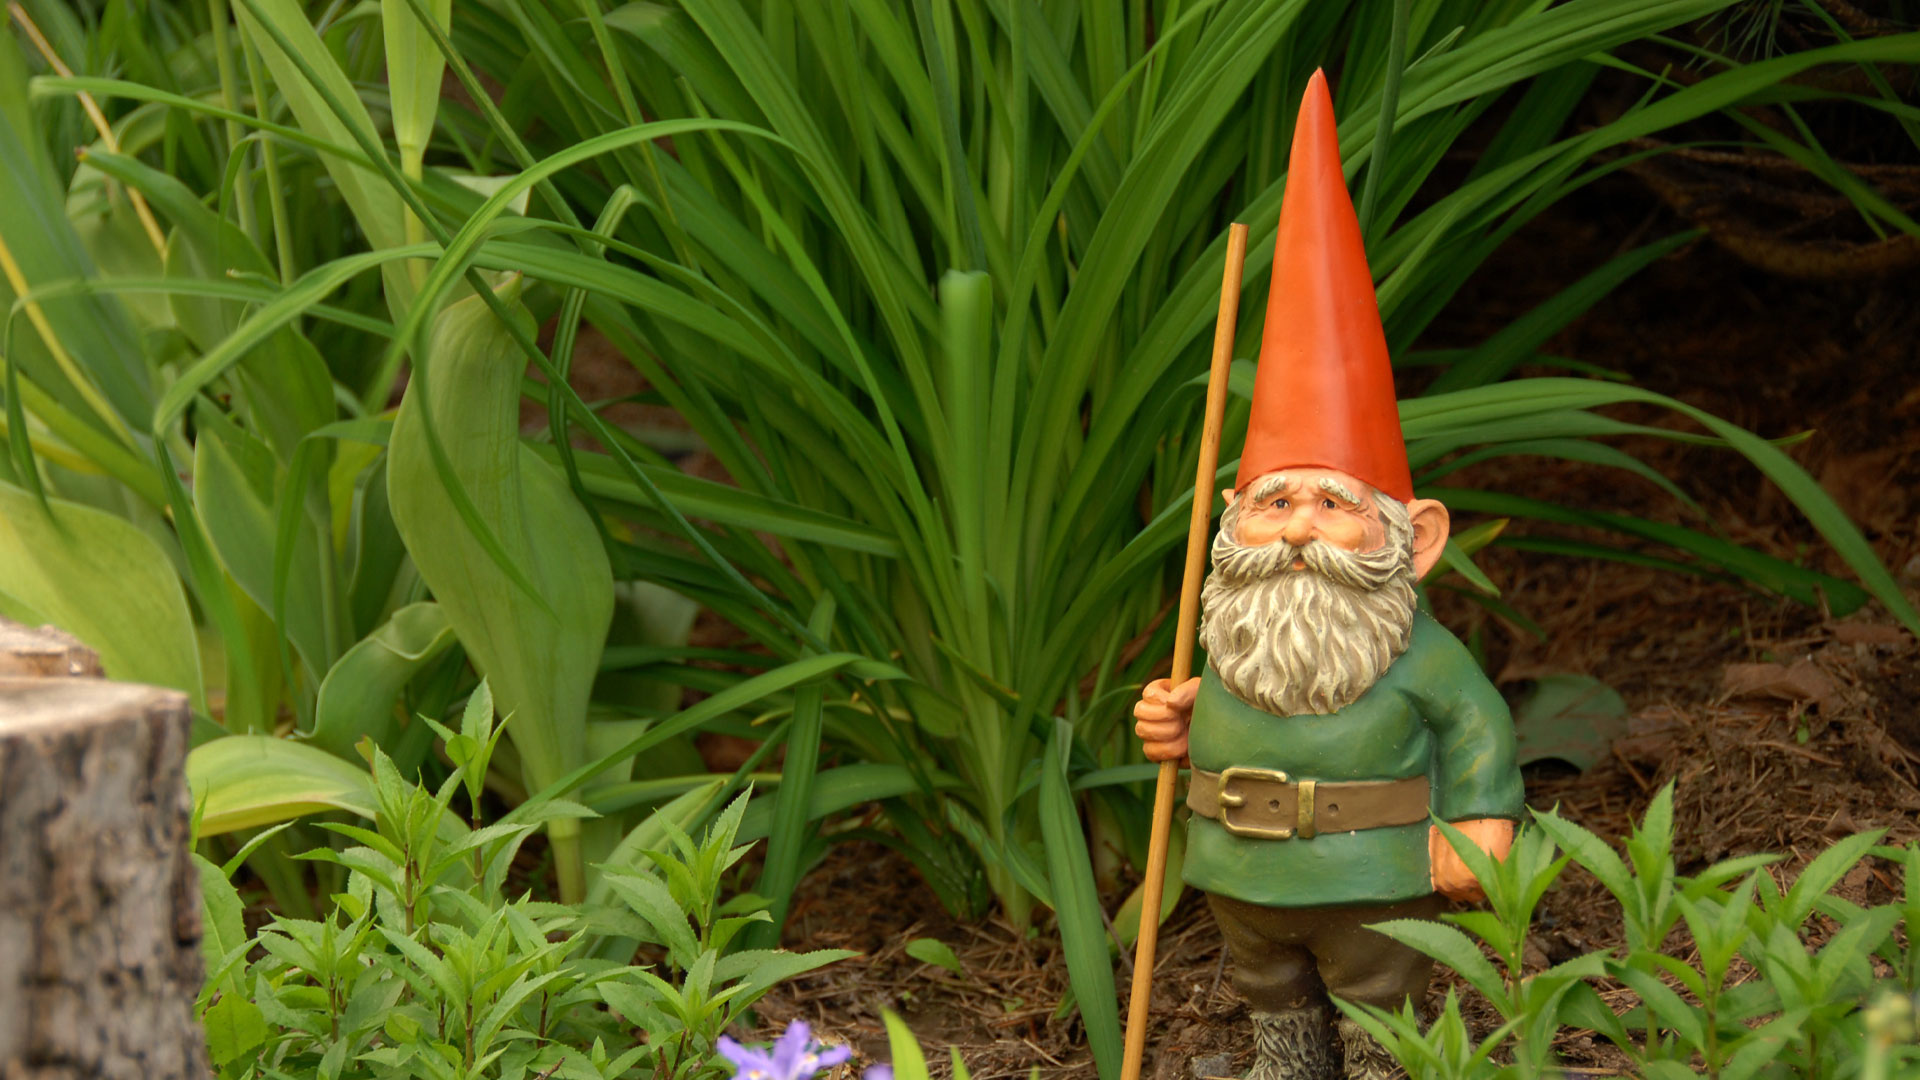 A garden gnome statue standing in a garden.